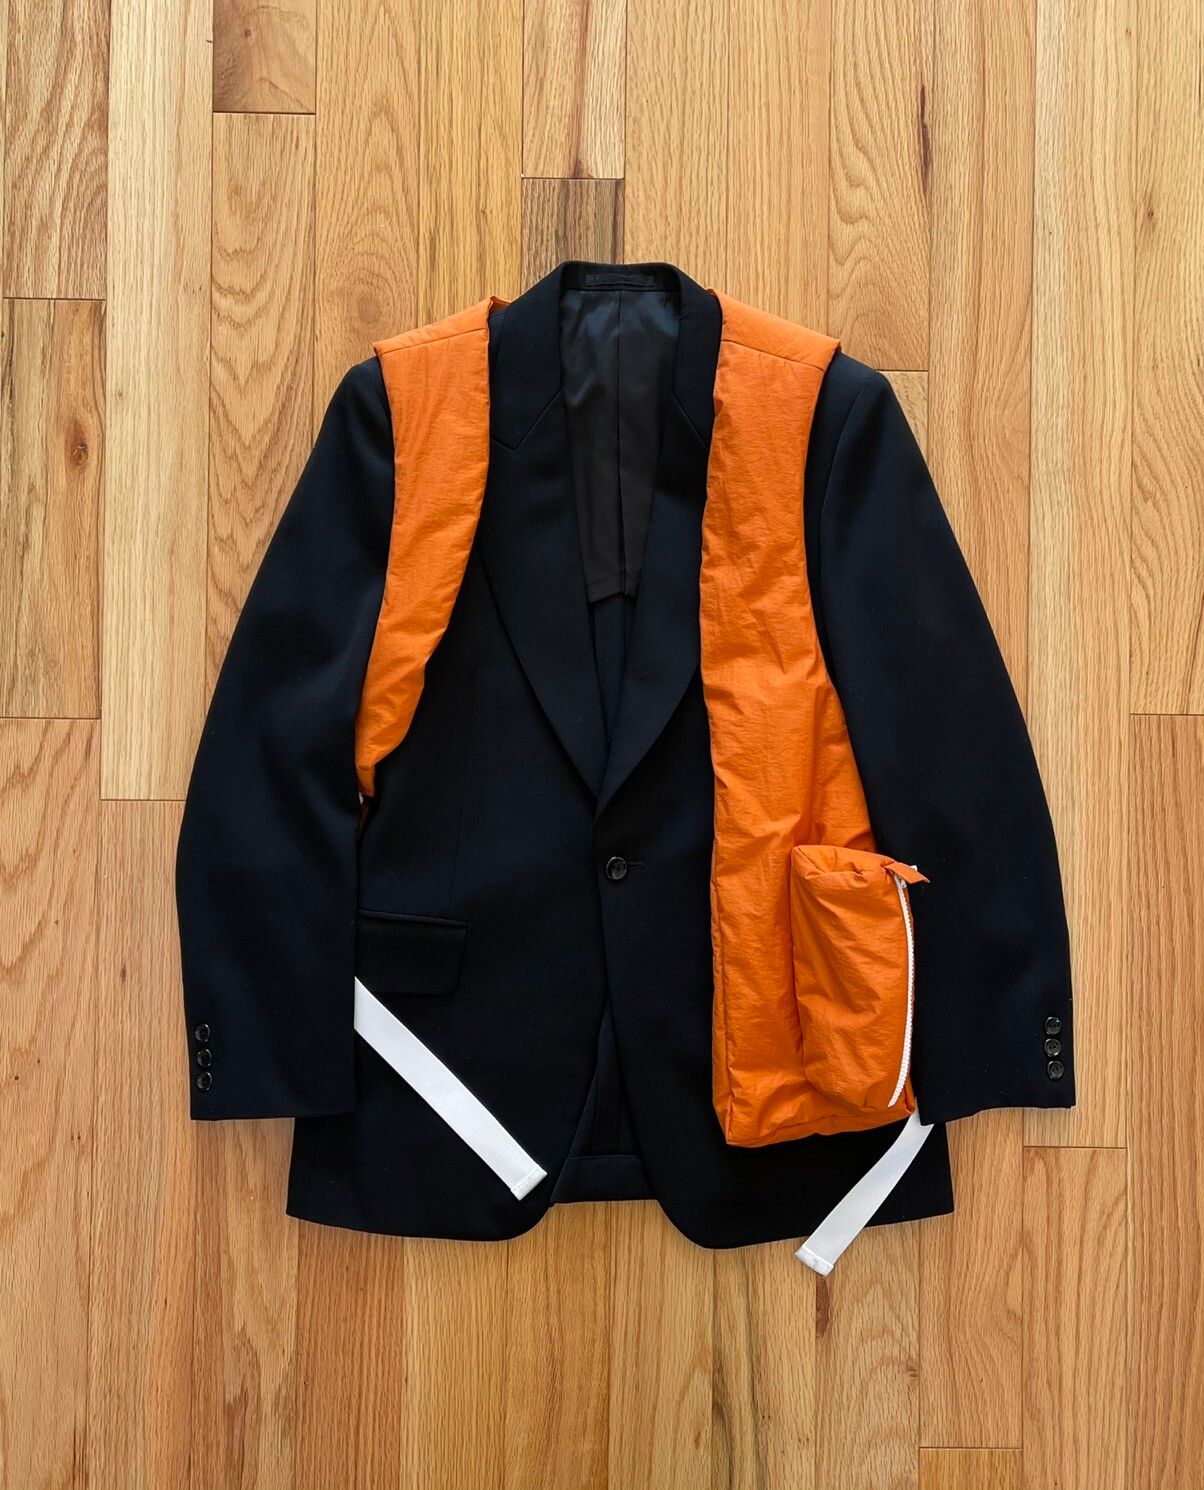 A Closer Look at Virgil Abloh's Louis Vuitton Utility Vest